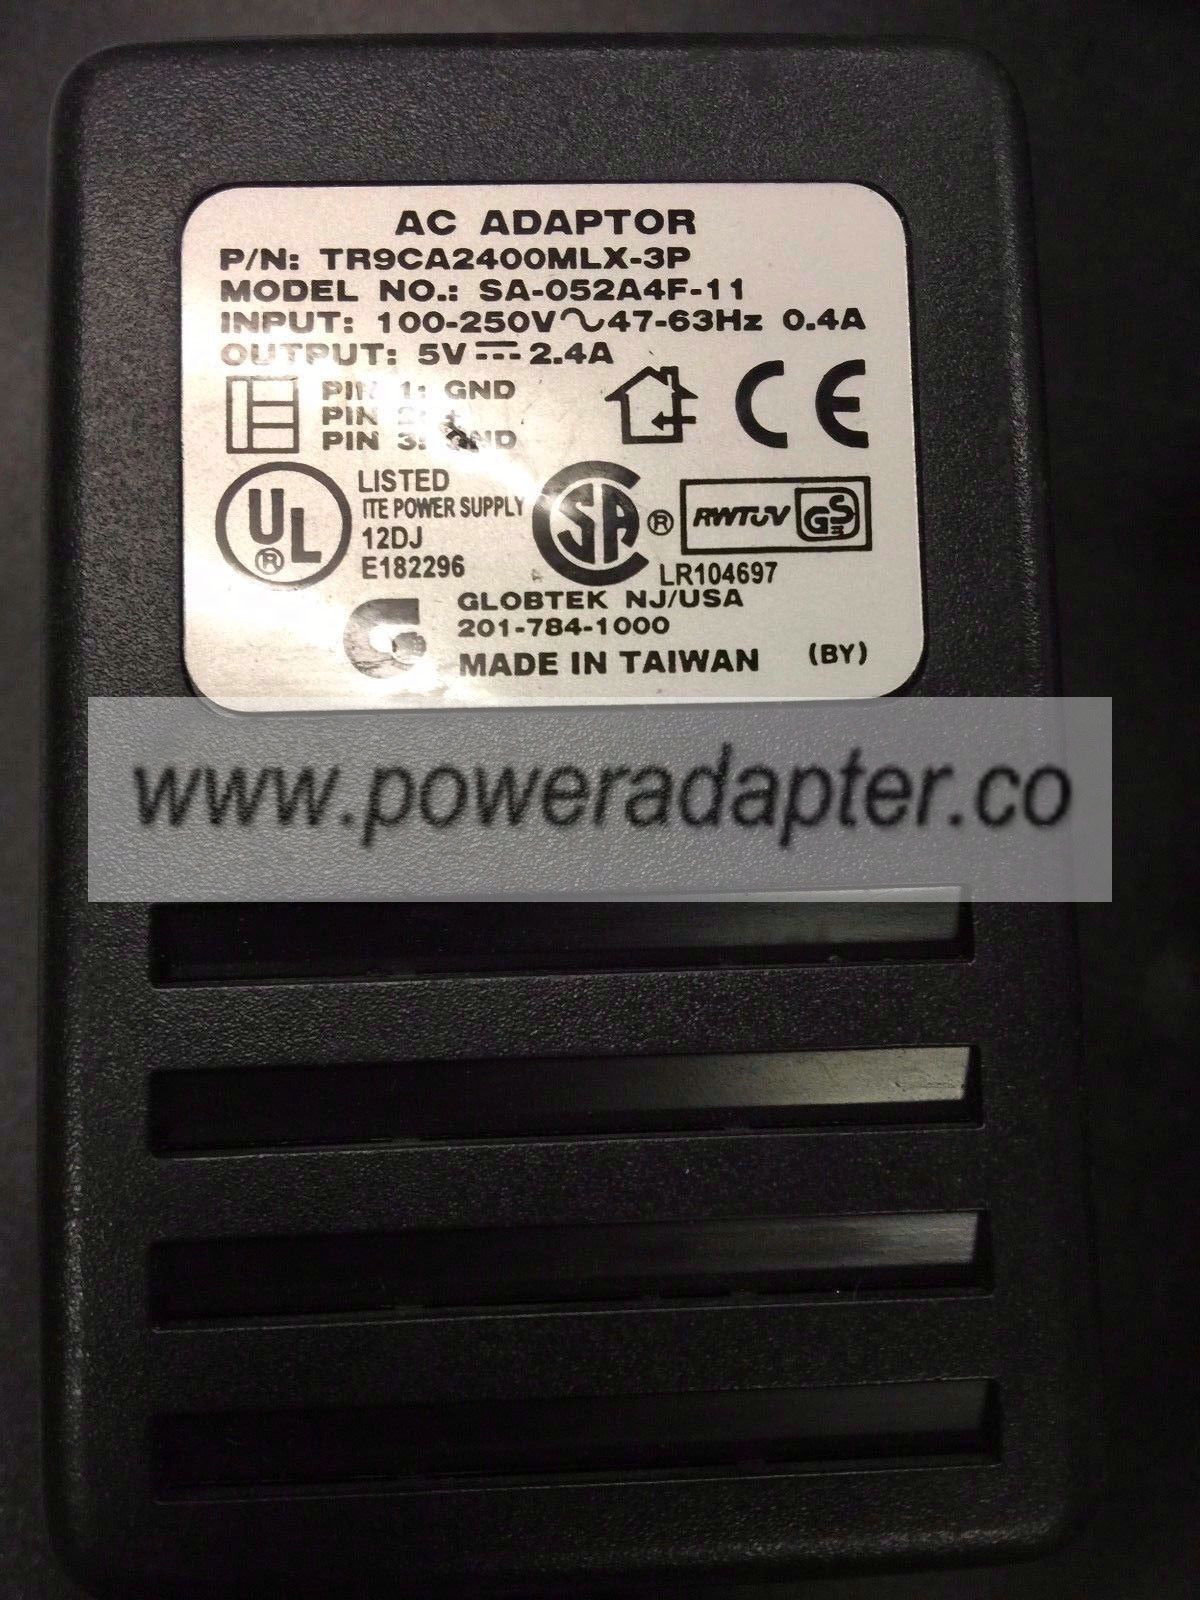 GLOBTEK SA-052A4F-11 AC Adapter 5Vdc 2.4A 3Pin Powersupply - Click Image to Close